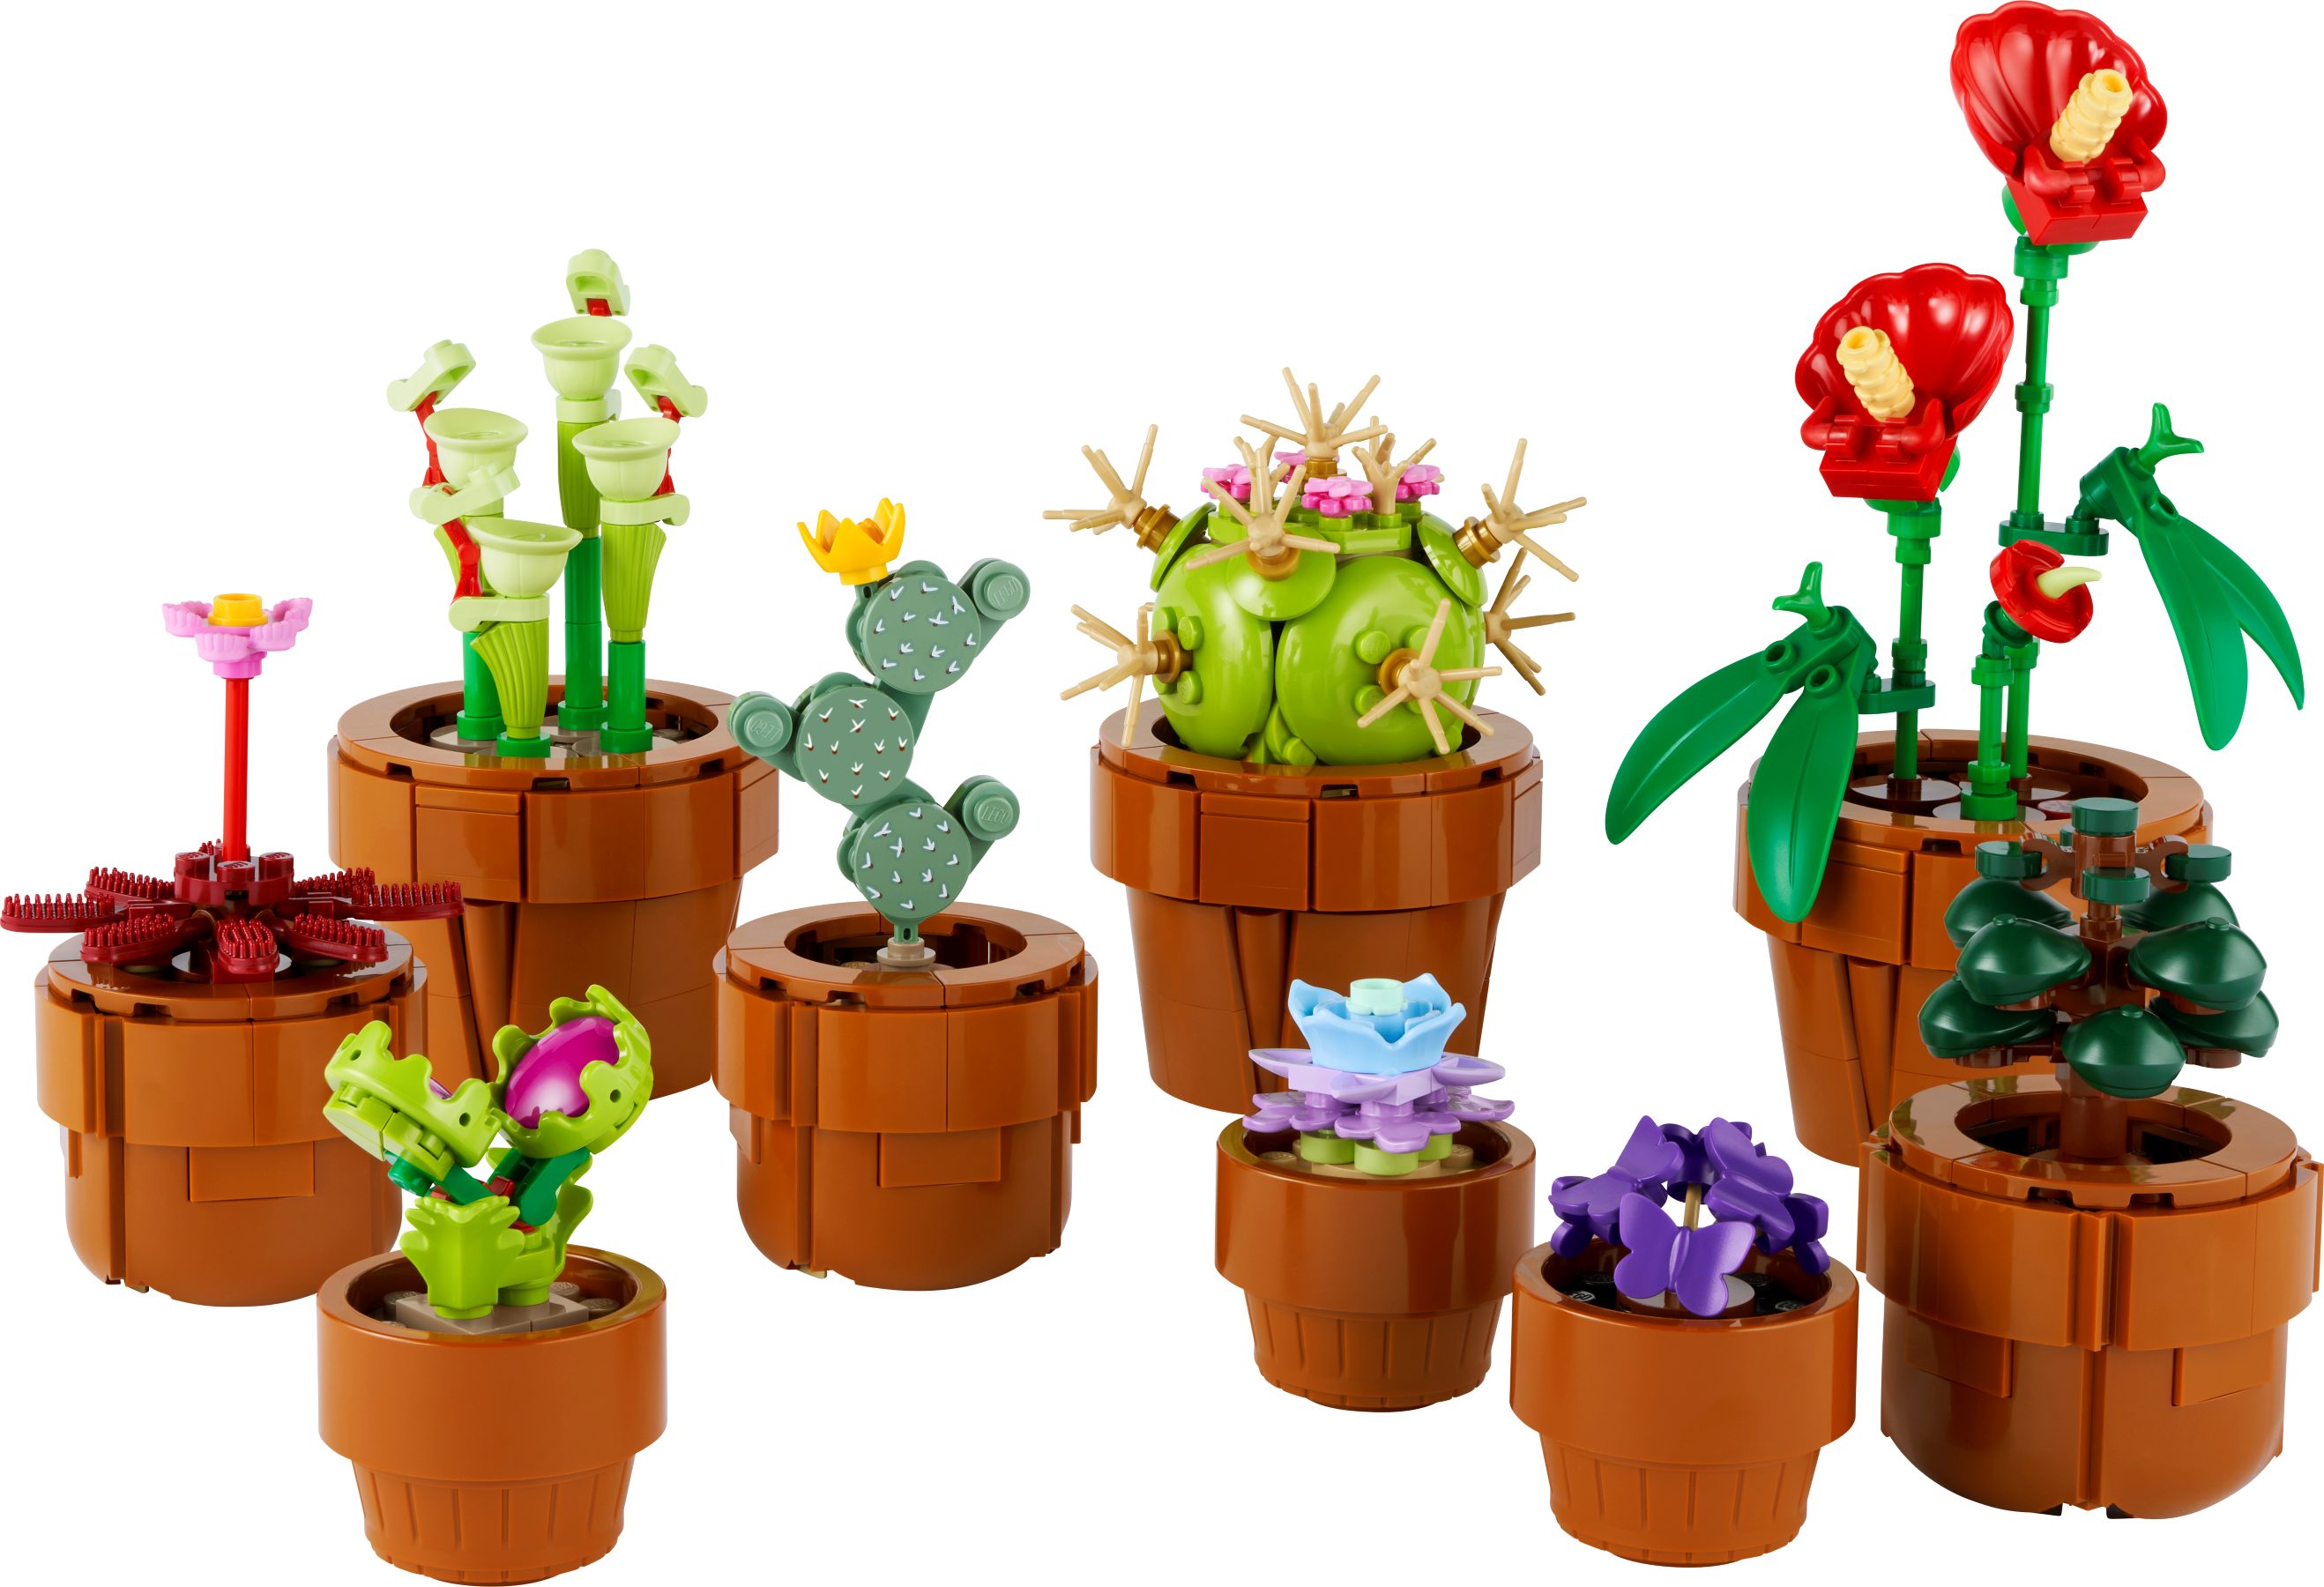 161 particelle (garofano) Lego Le piante di orchidea con fiori artificiali  per l'arredamento della casa, artigianato per adulti, collezione botanica,  regalo per la festa della mamma